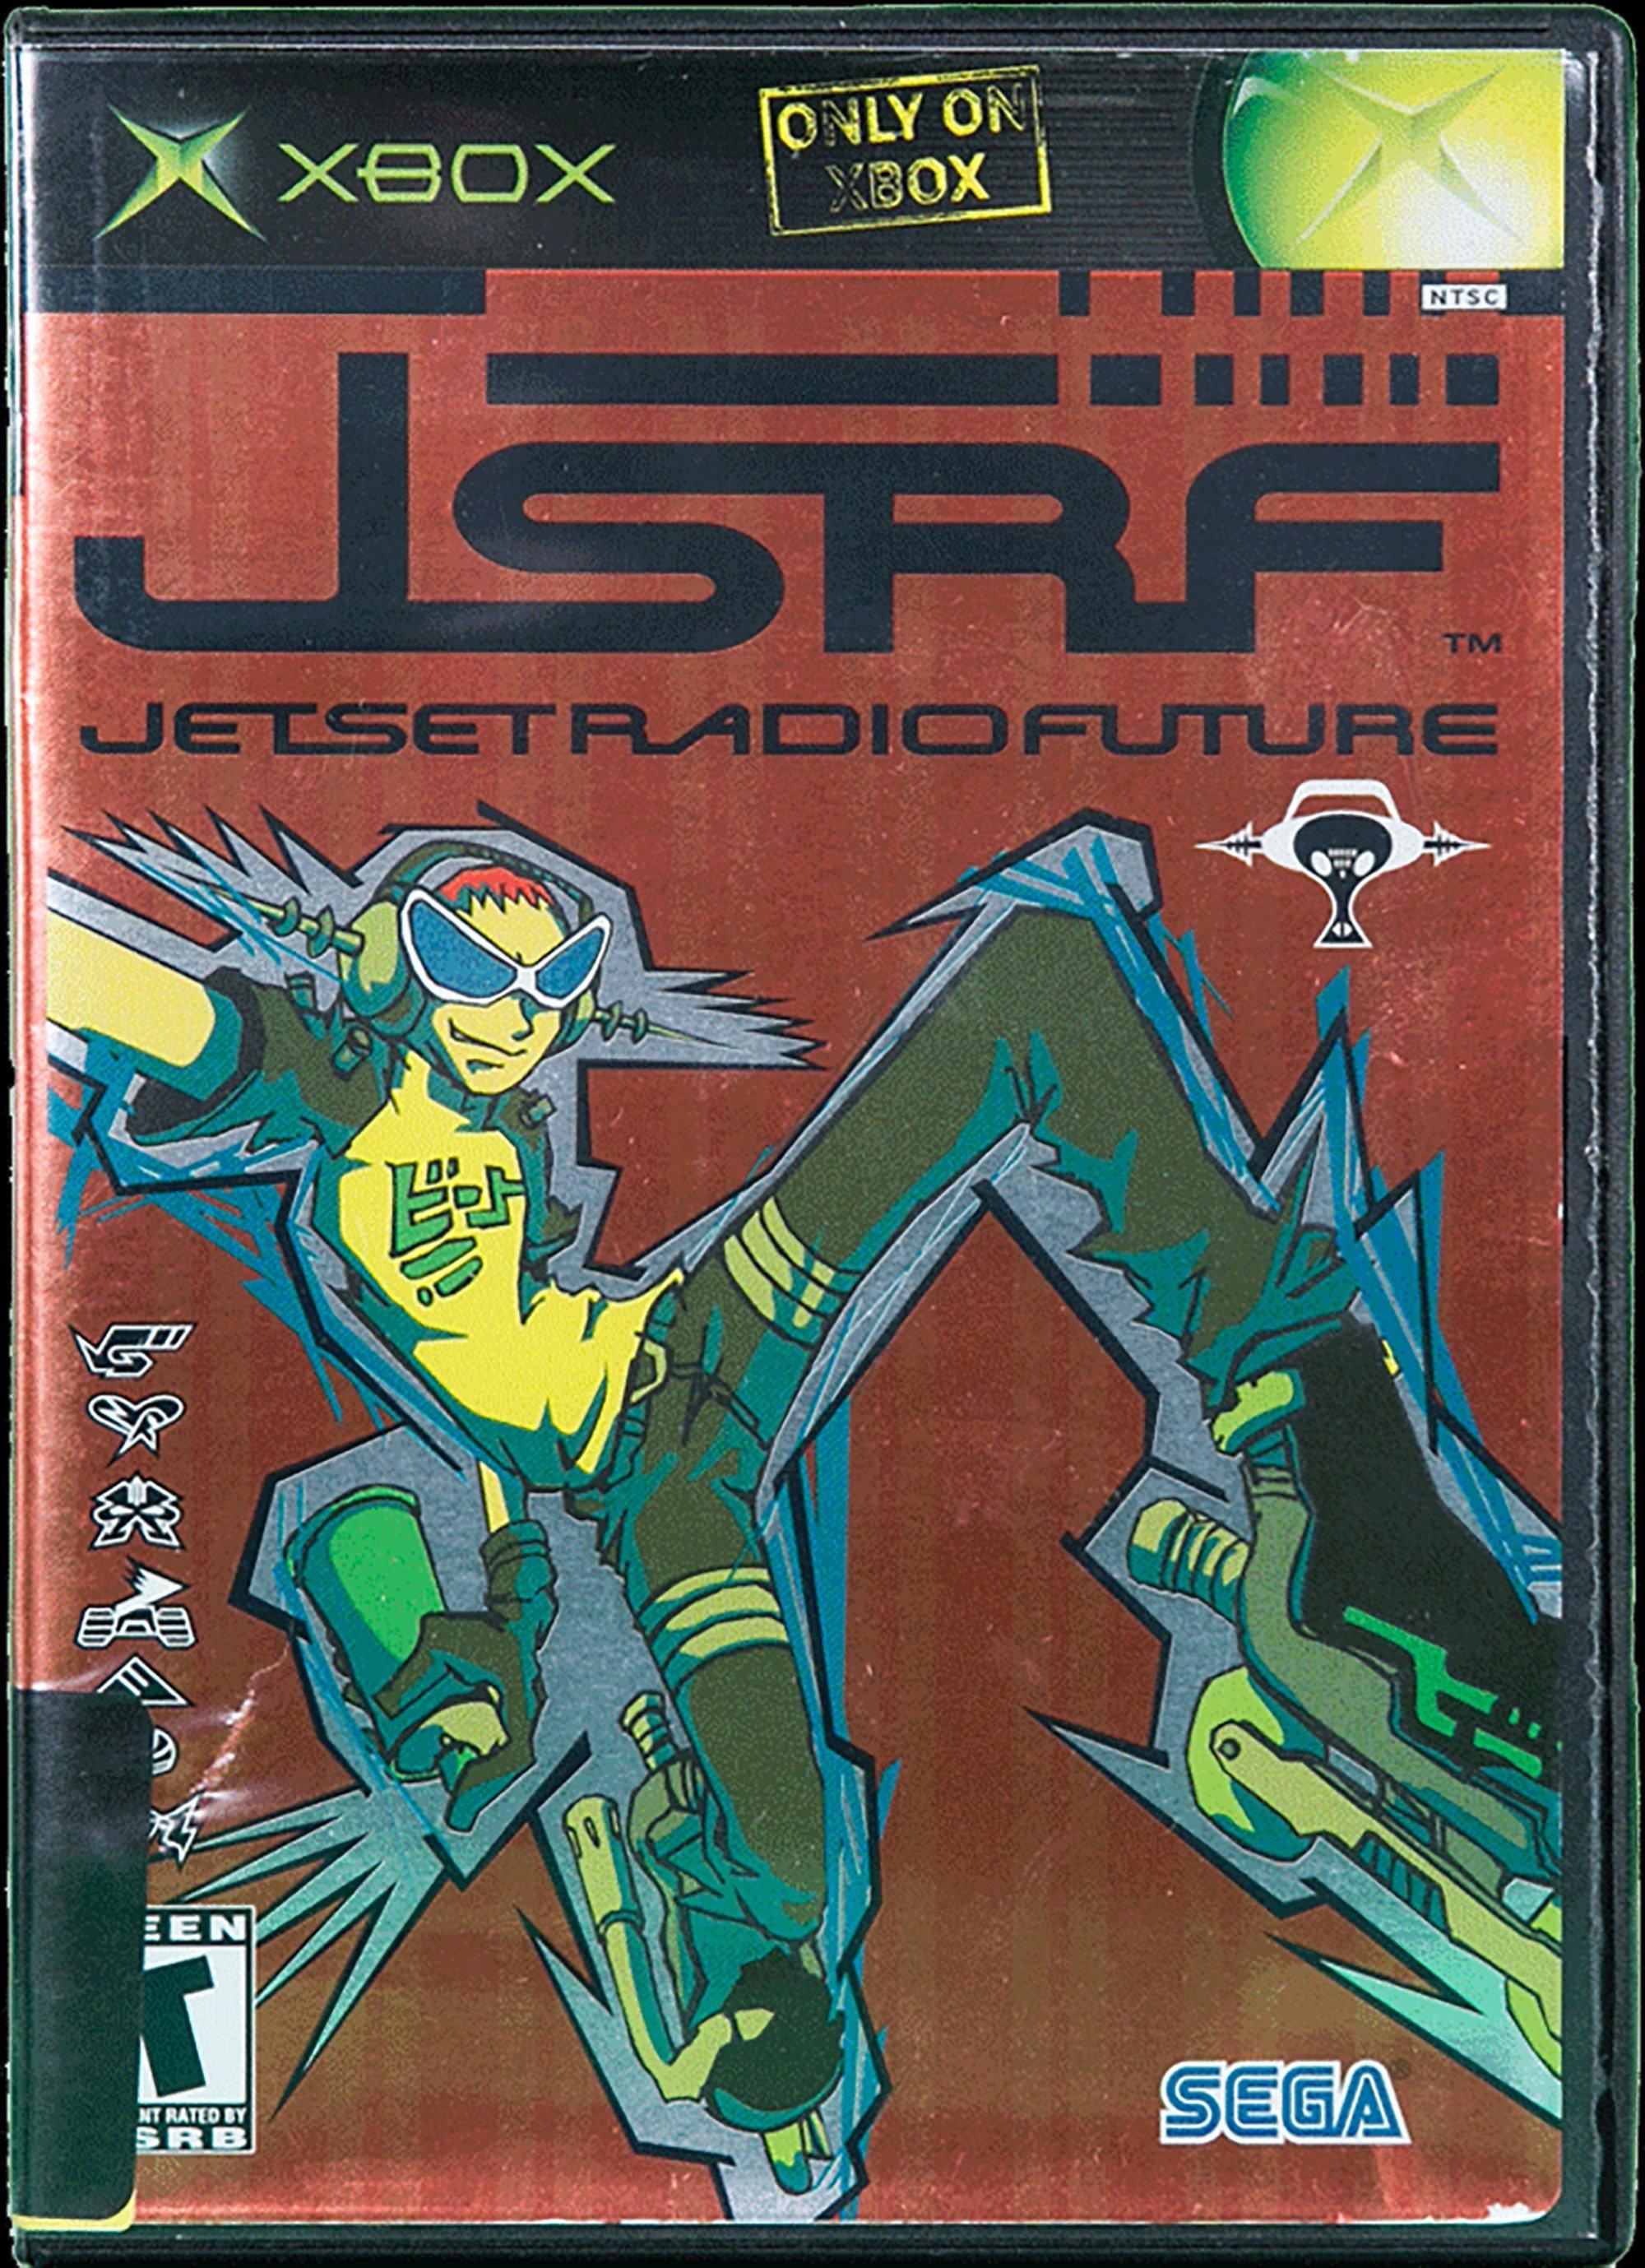 jet set radio future xbox one backwards compatibility